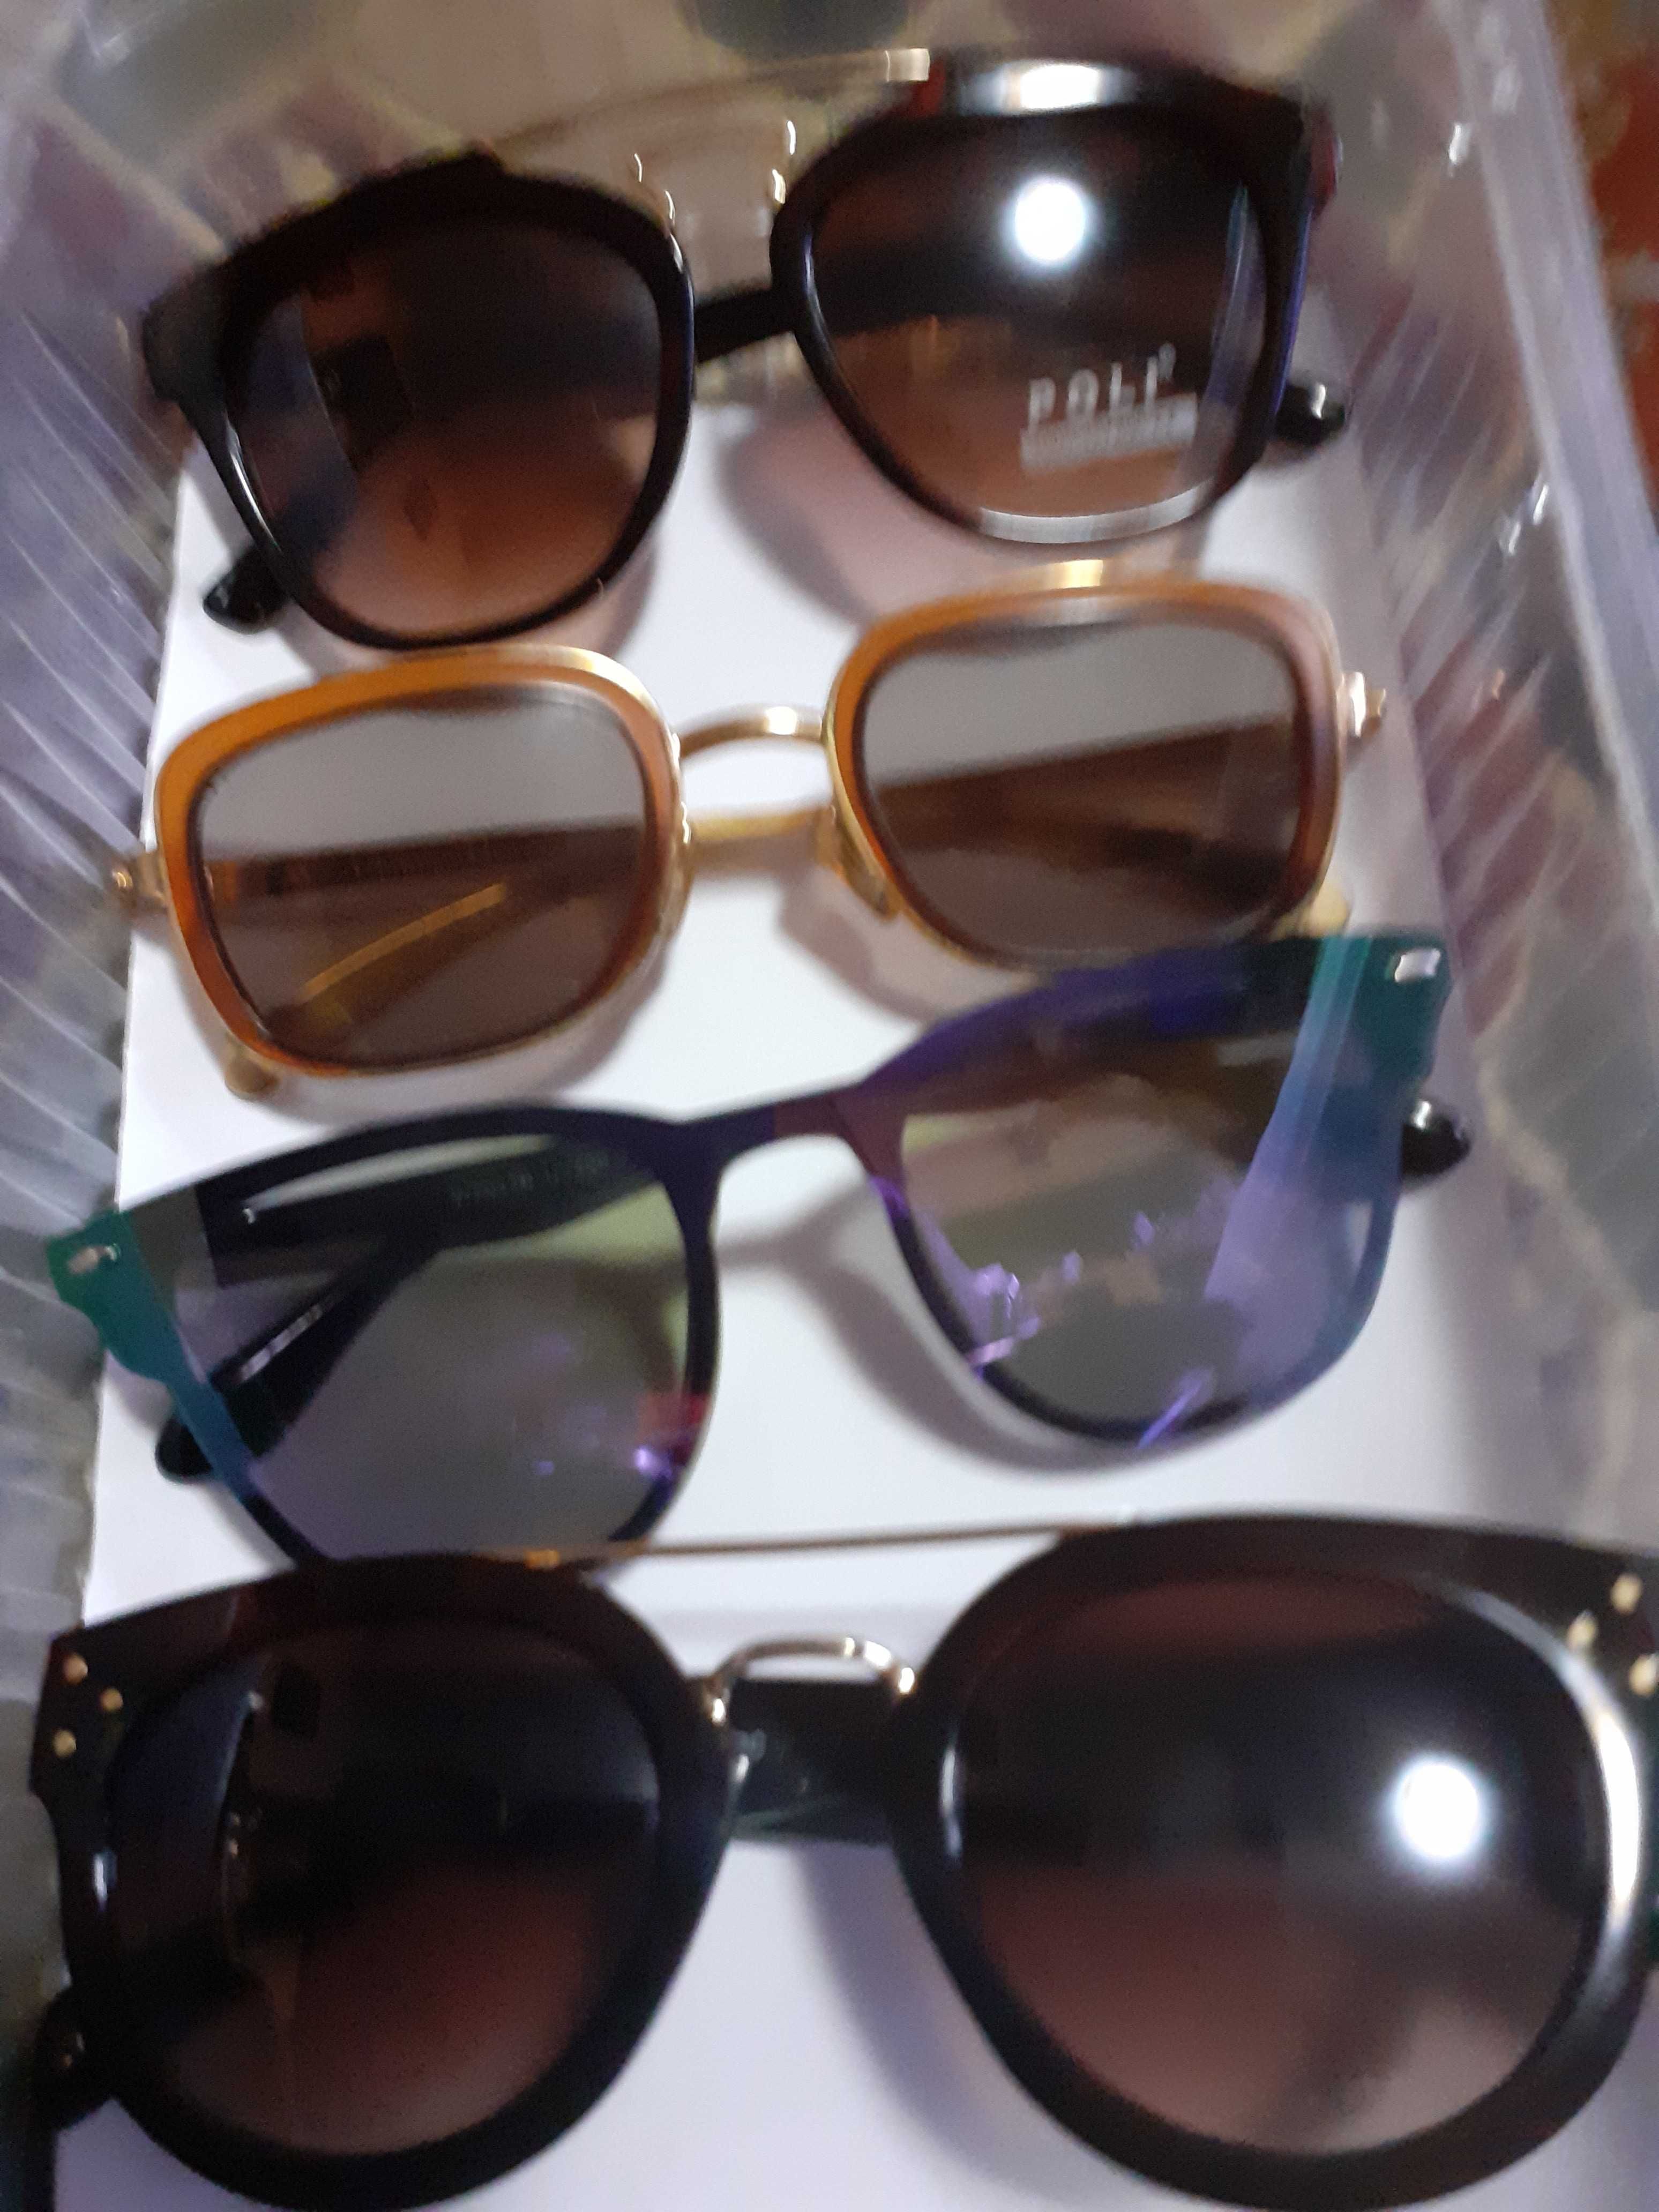 ochelari noi de soare adusi din italia sunt de firma